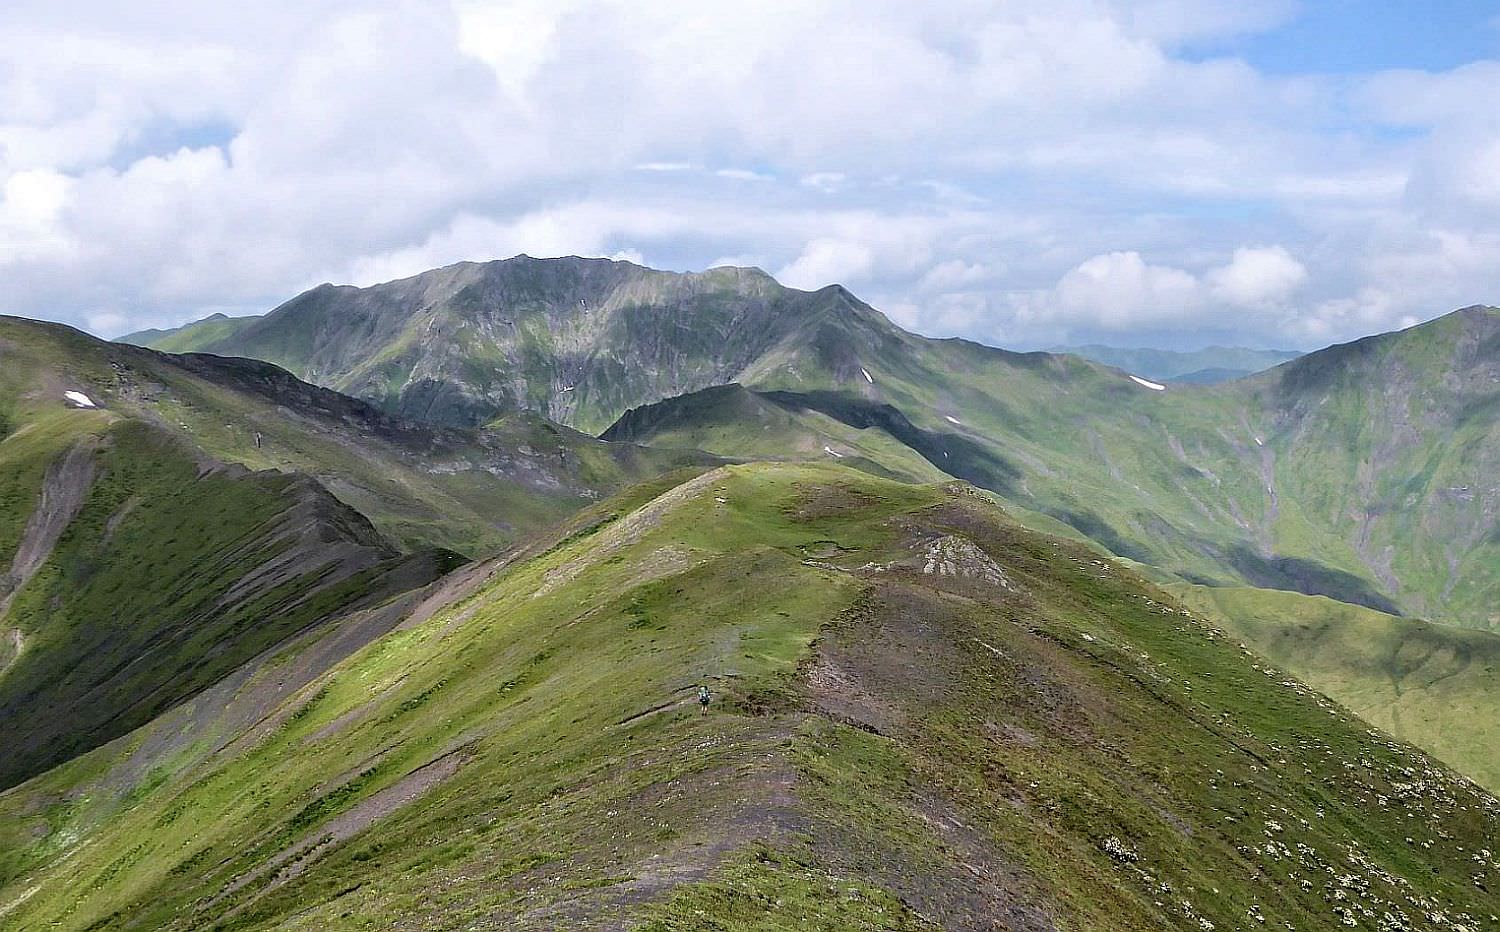 On the ridge of Greater Caucasus